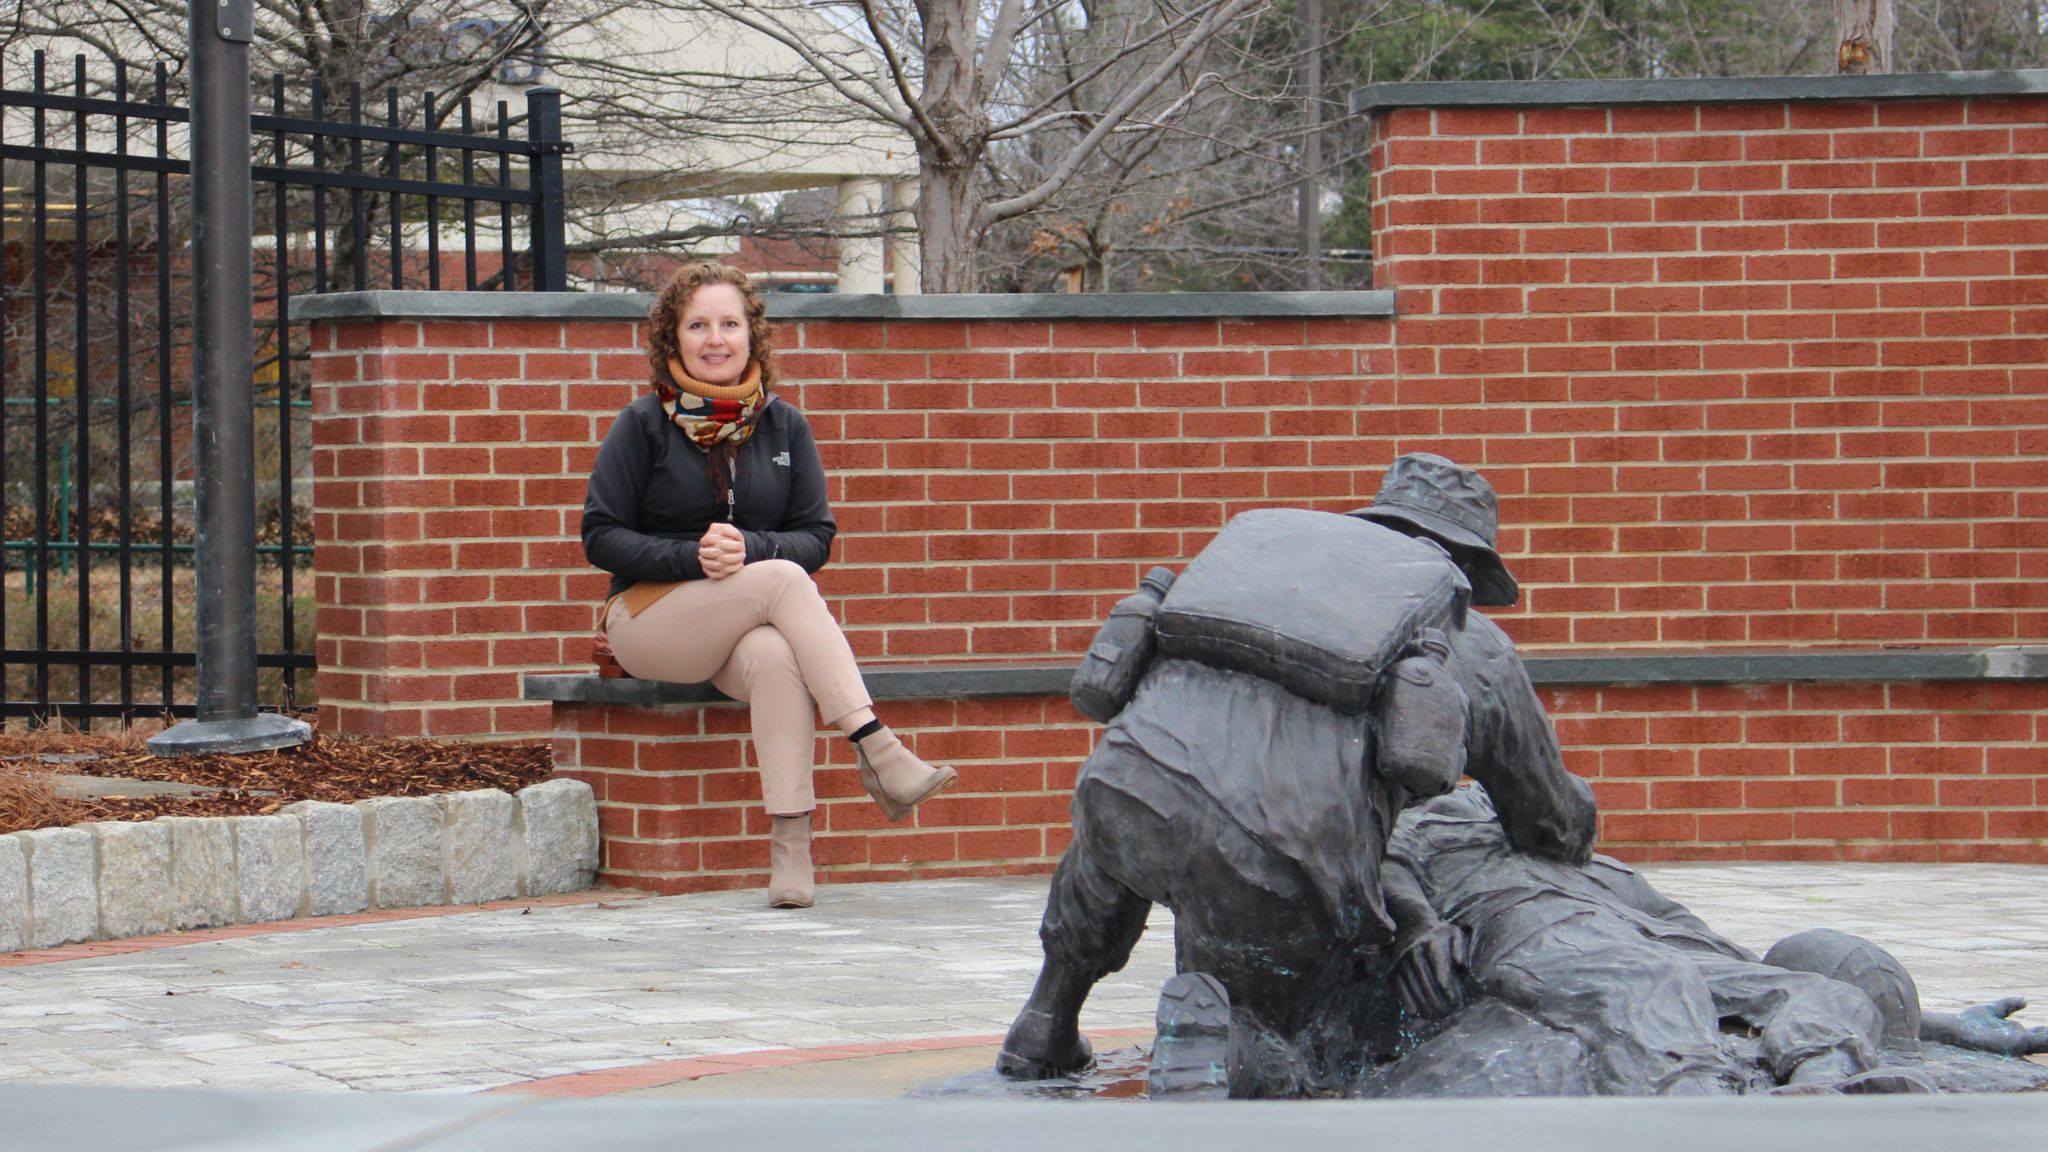 Faculty member Julieta Sherk sitting by a statue